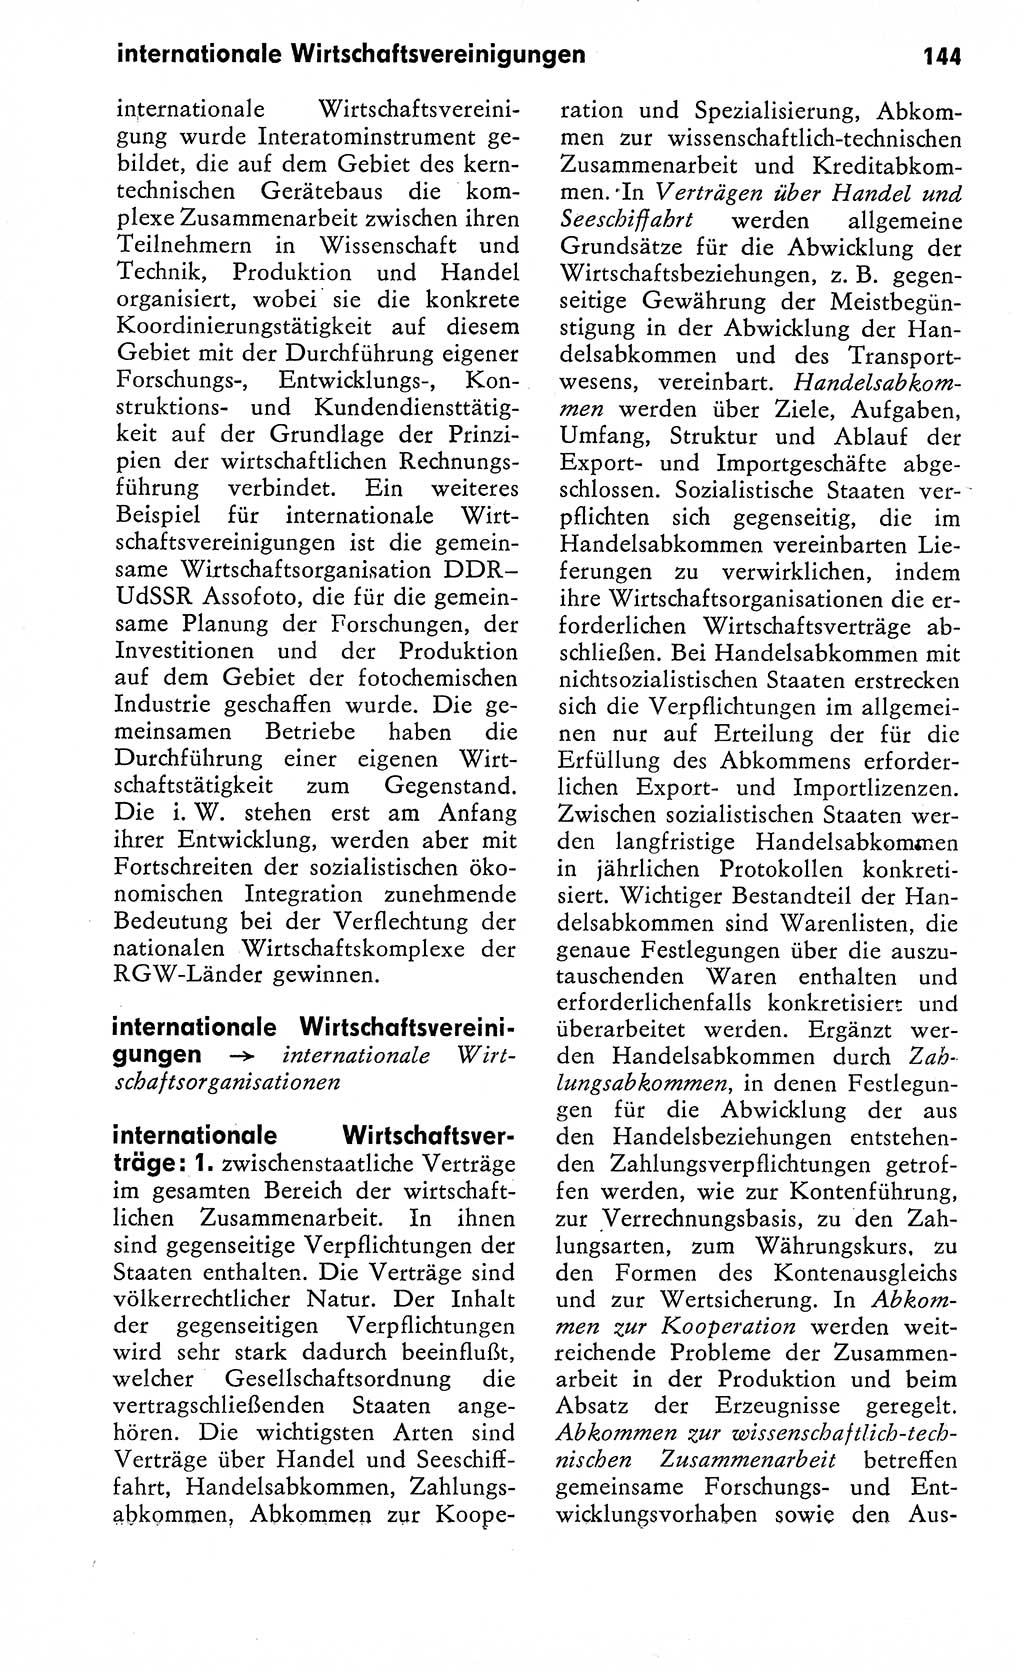 Wörterbuch zum sozialistischen Staat [Deutsche Demokratische Republik (DDR)] 1974, Seite 144 (Wb. soz. St. DDR 1974, S. 144)